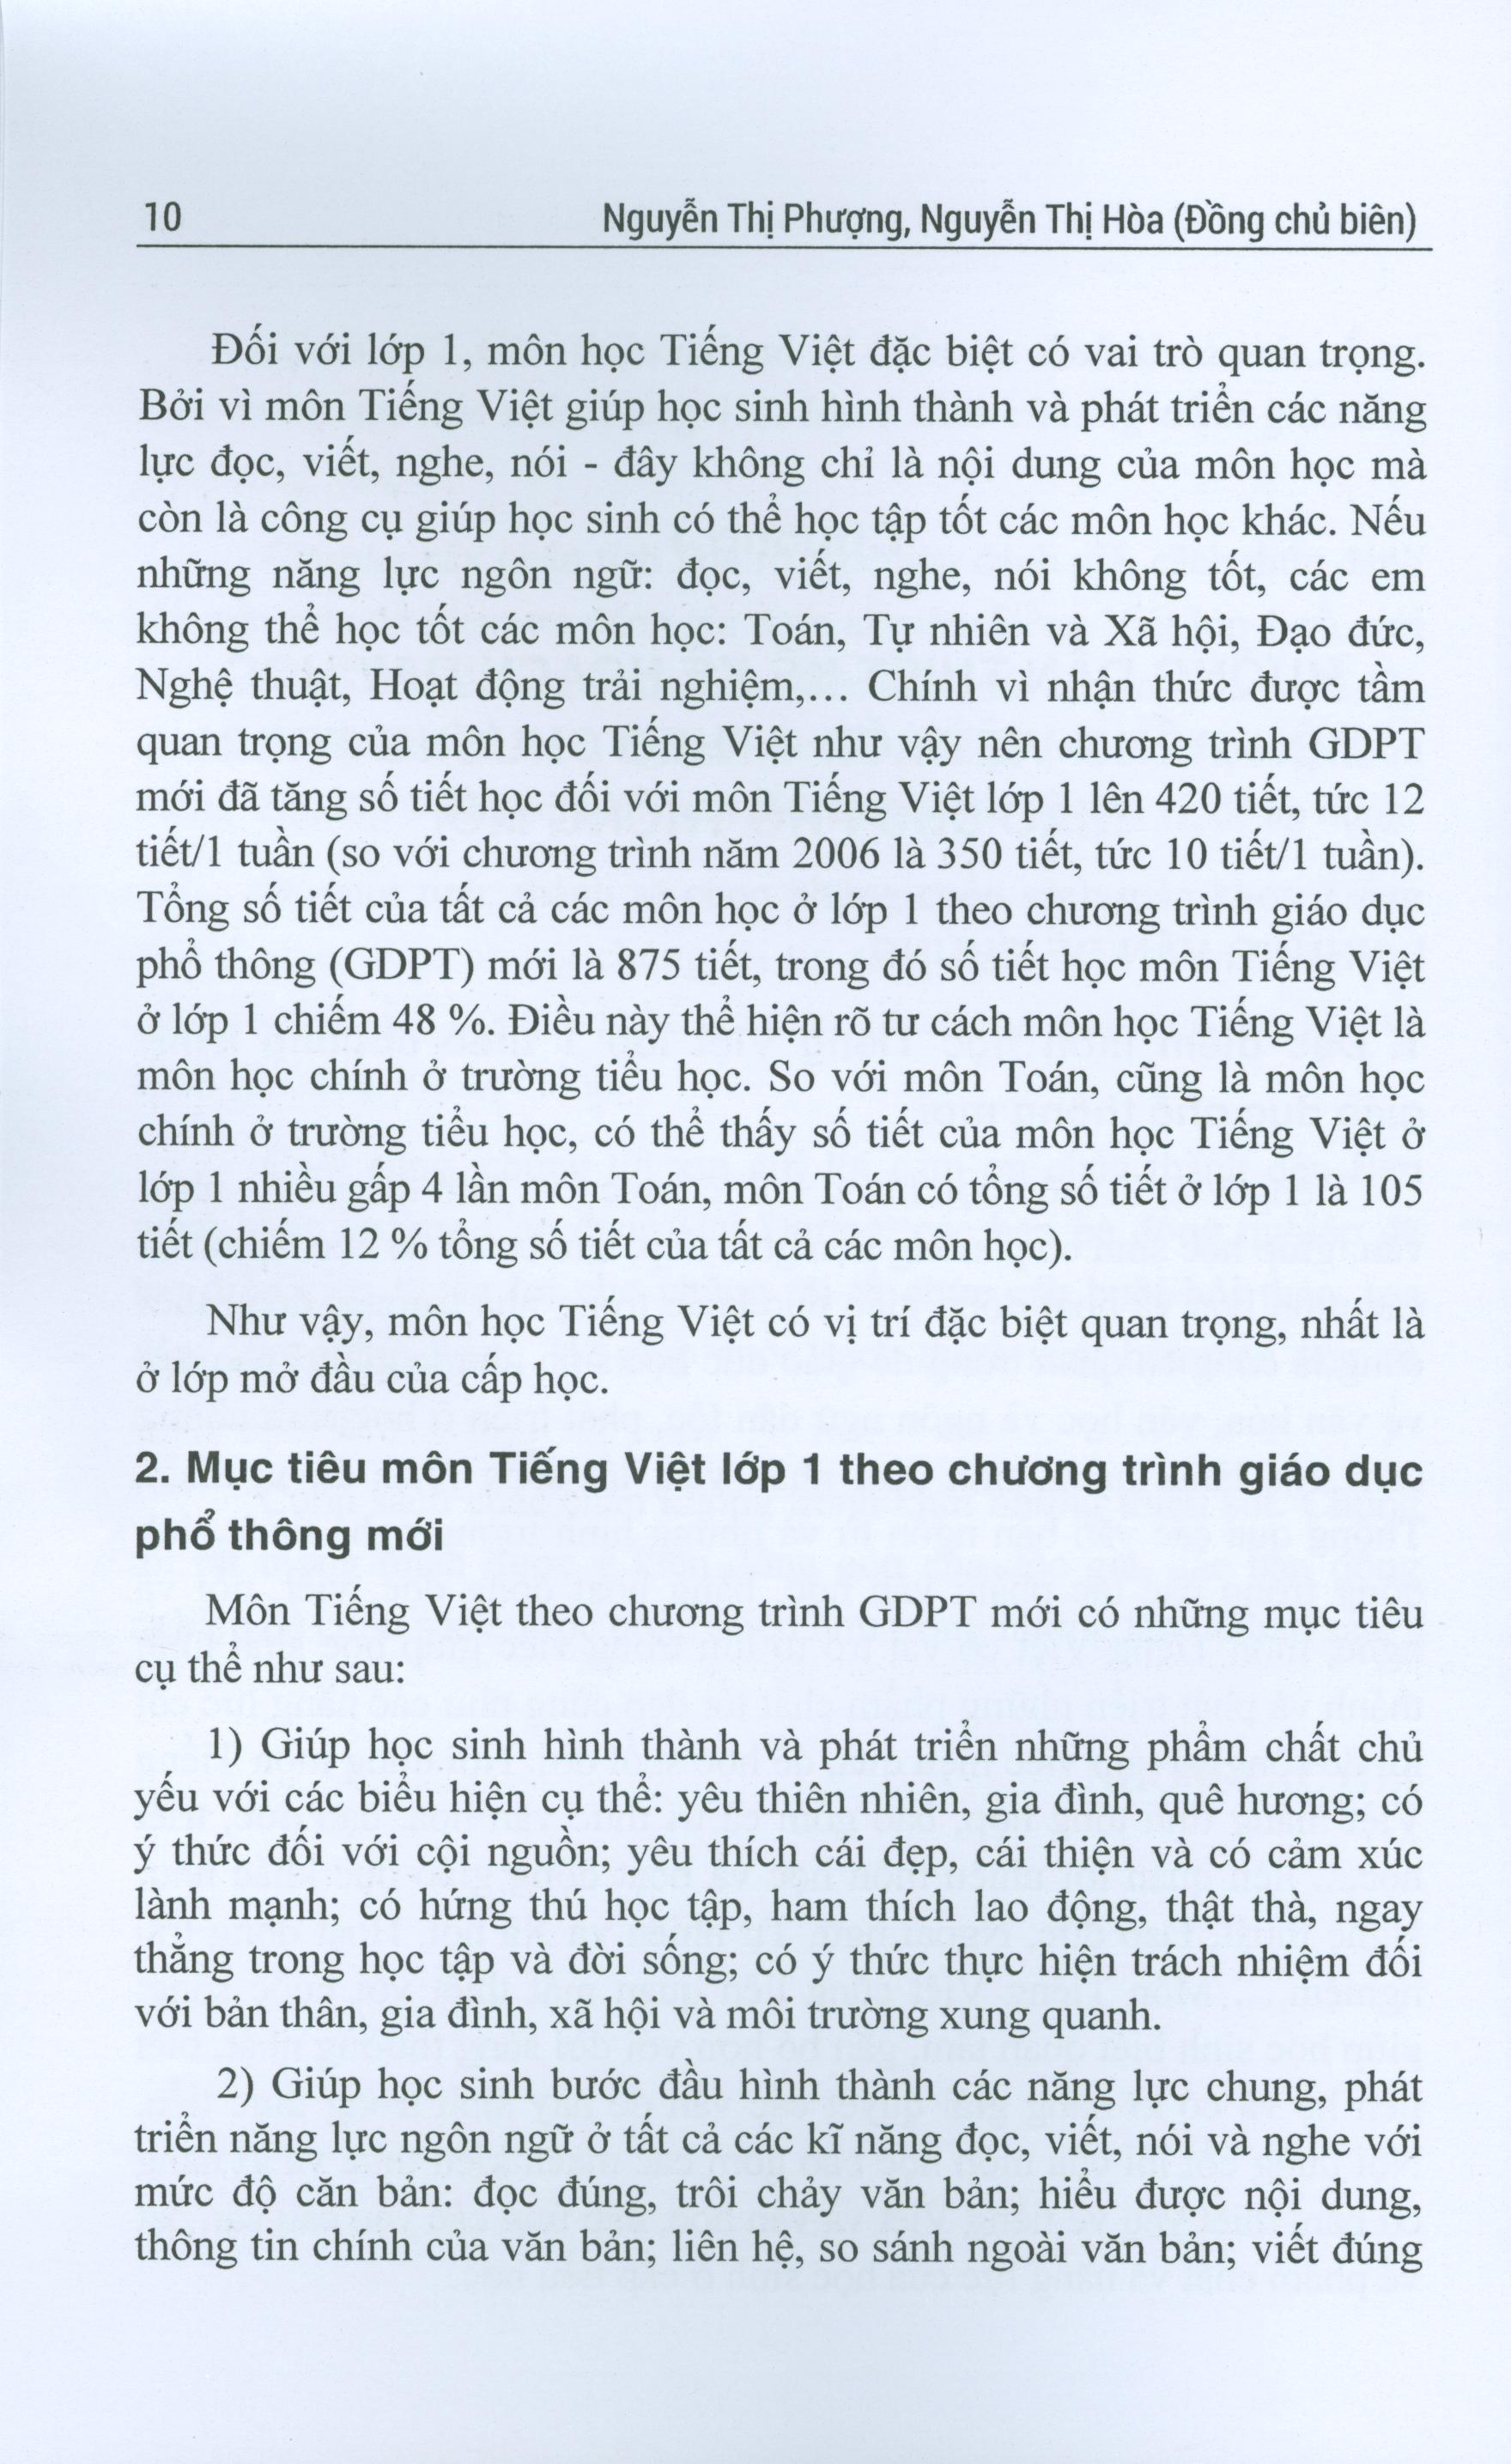 Tài Liệu Hướng Dẫn Thiết Kế Kế Hoạch Dạy Hoc Môn Tiếng Việt Lớp 1 Theo Chương Trình Giáo Dục Phổ Thông Mới